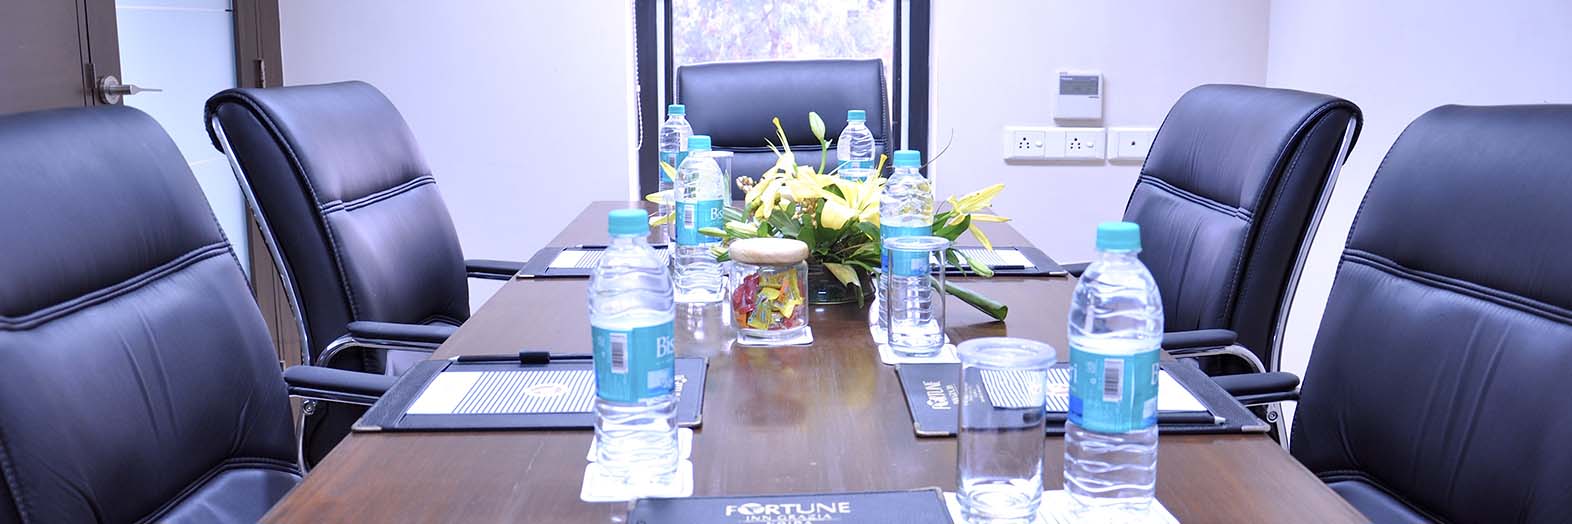 Fortune Inn Grazia–Hotels in  Noida  Meeting Venue